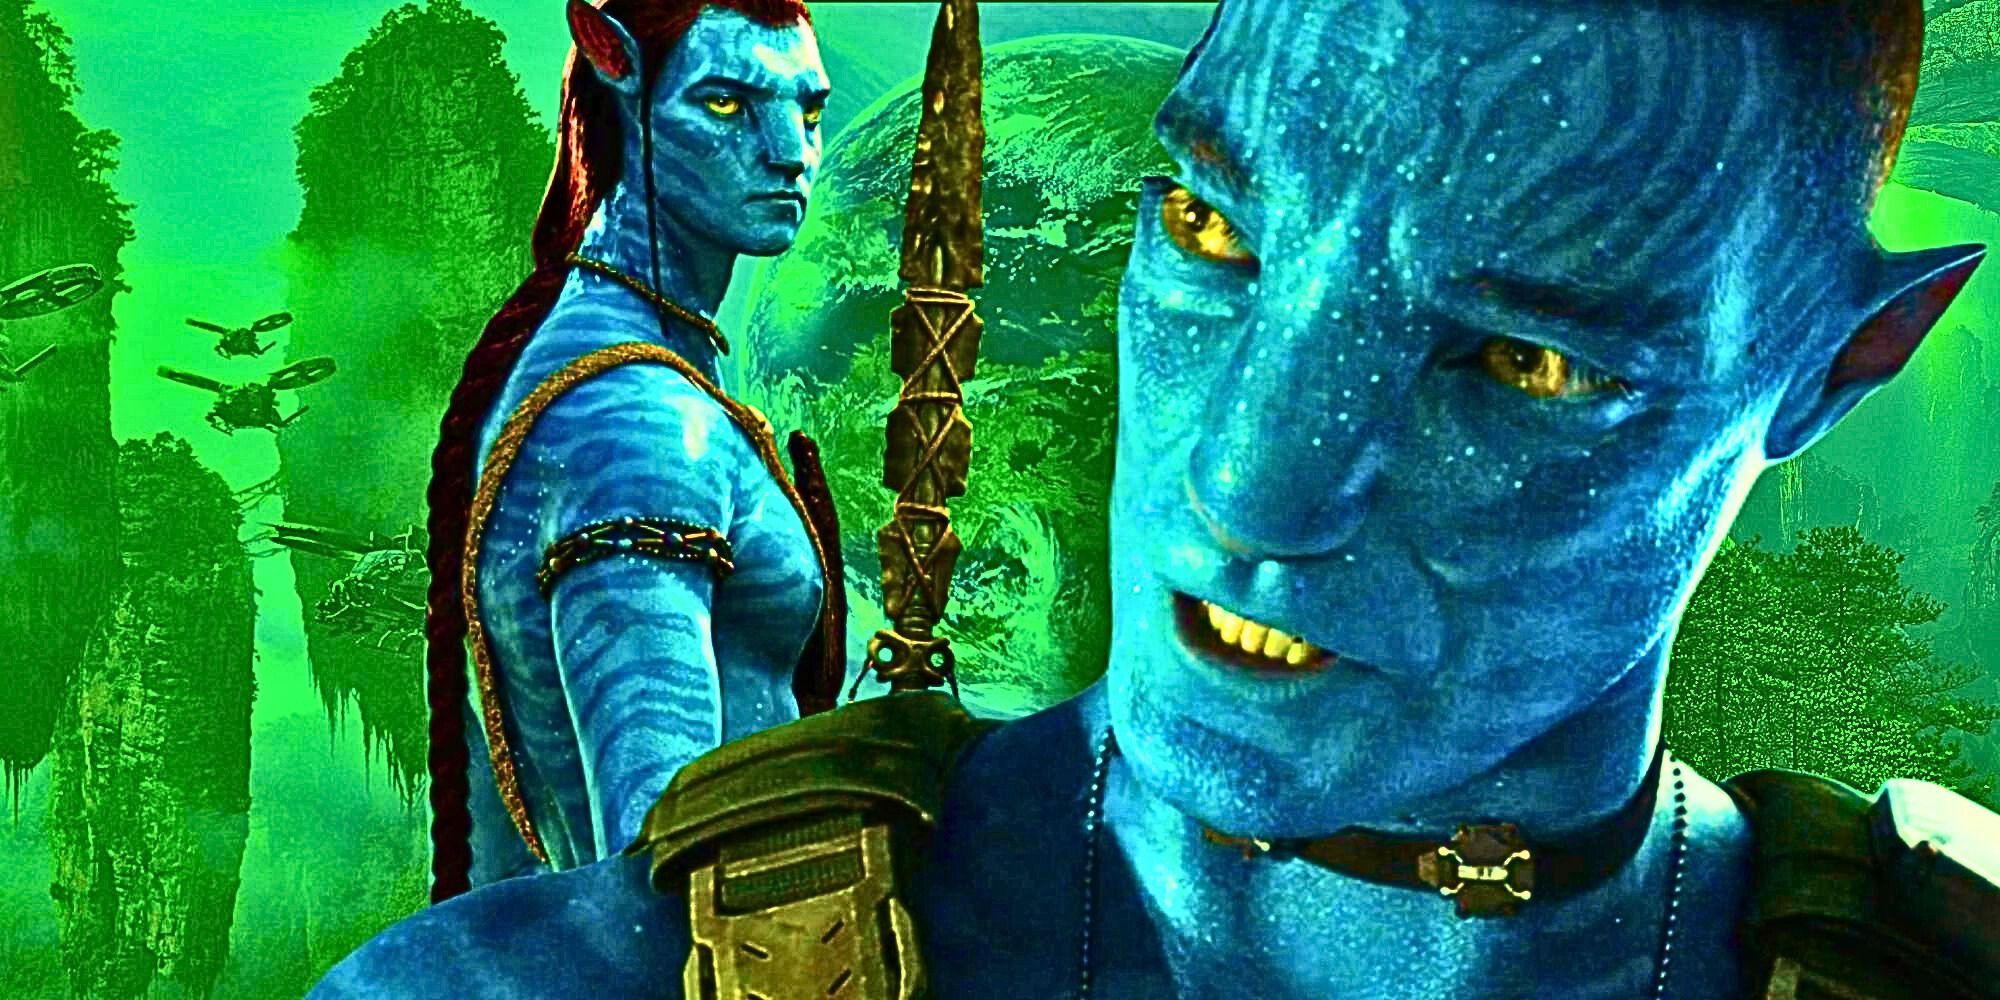 El coronel Miles Quaritch eventualmente se unirá a Jake Sully: explicación de la teoría de las secuelas de Avatar